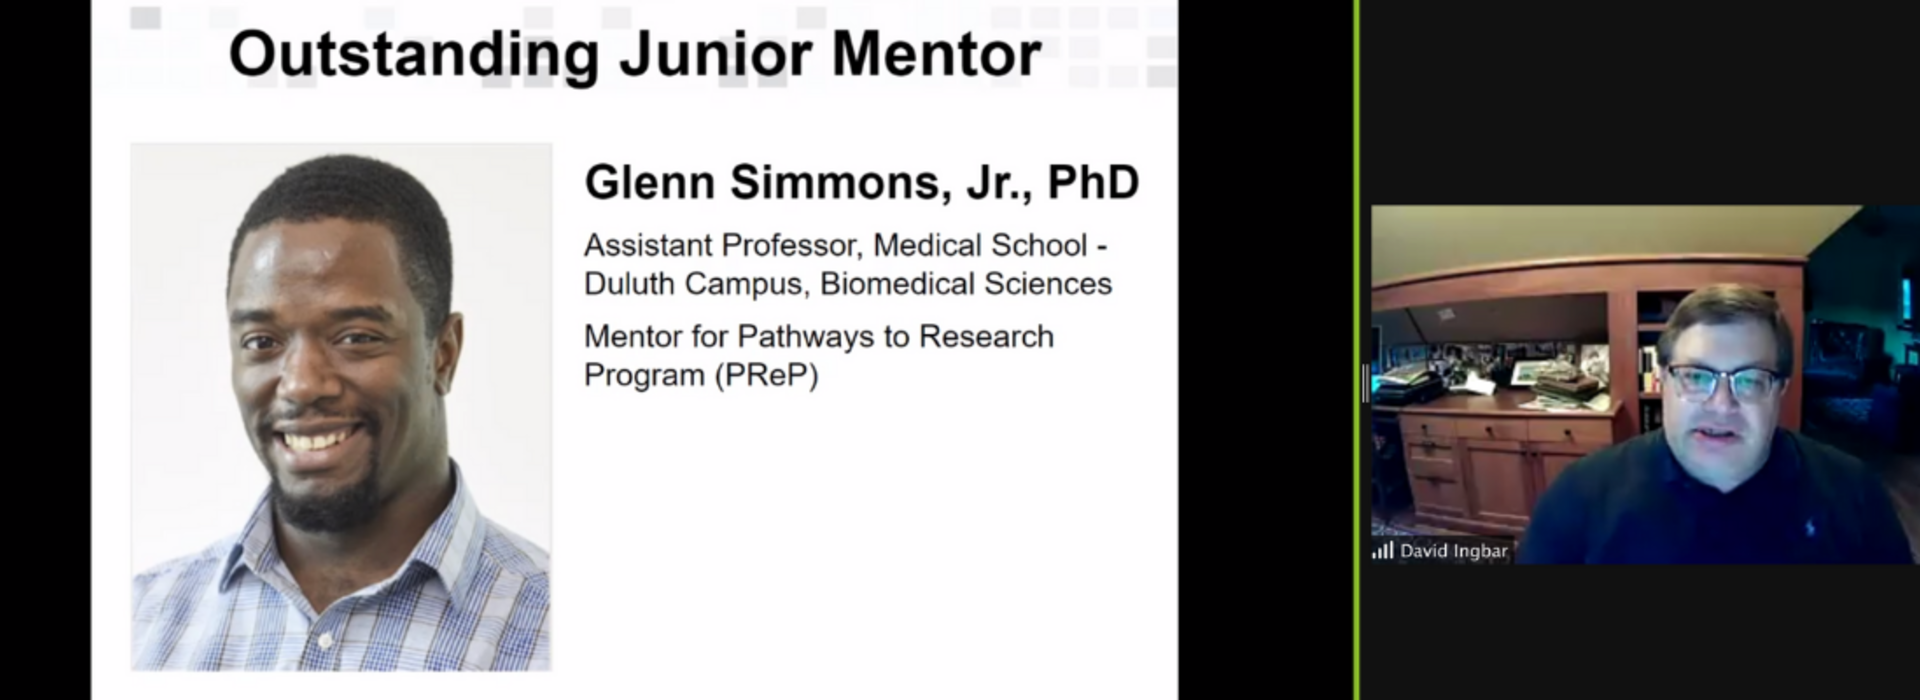 Dr. Glenn Simmons Jr. Recognized as a 2020 Outstanding Junior Mentor 